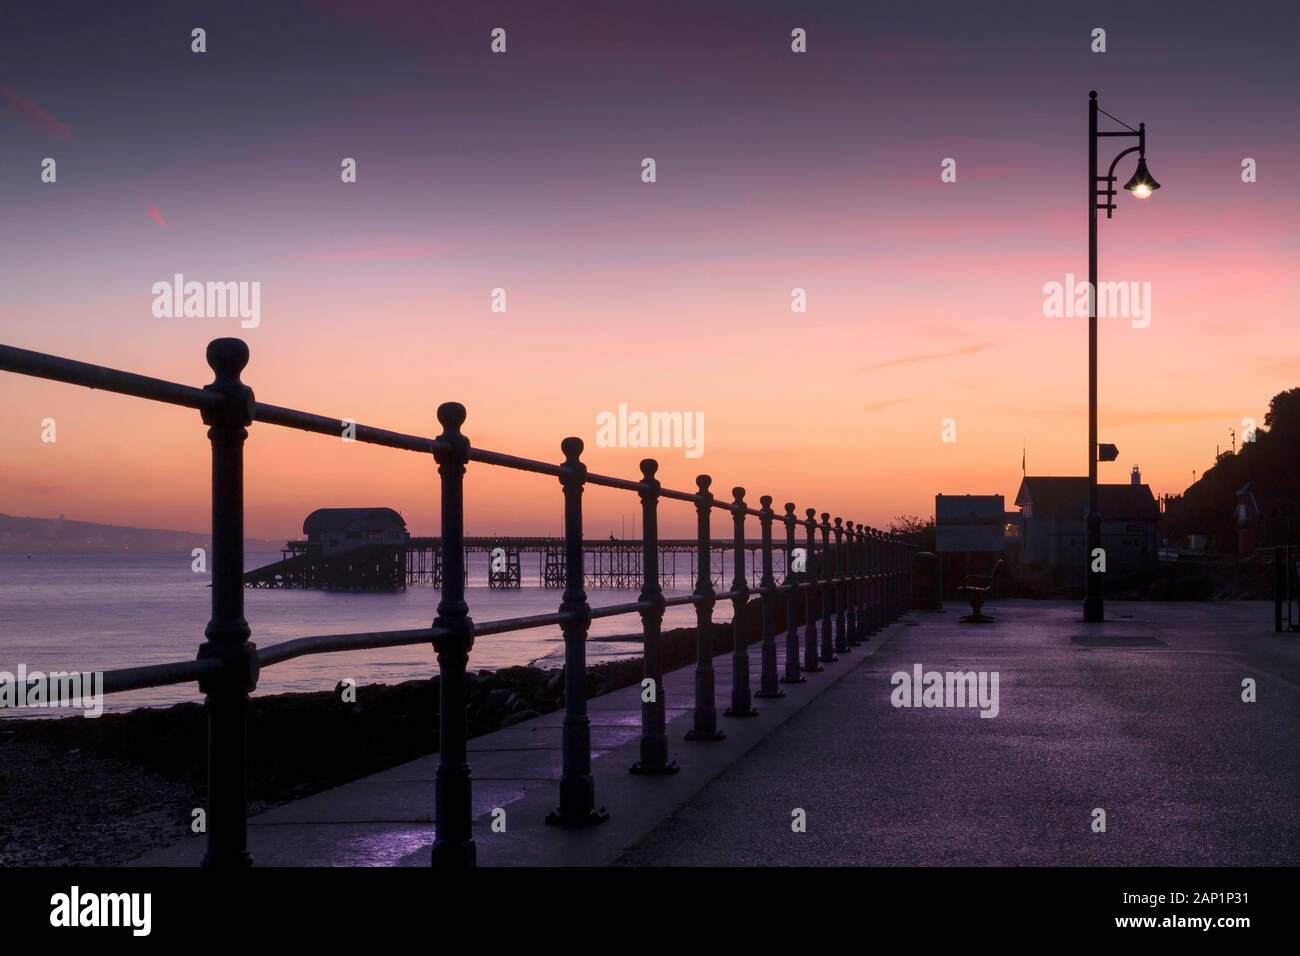 Dawn at Mumbles pier Stock Photo